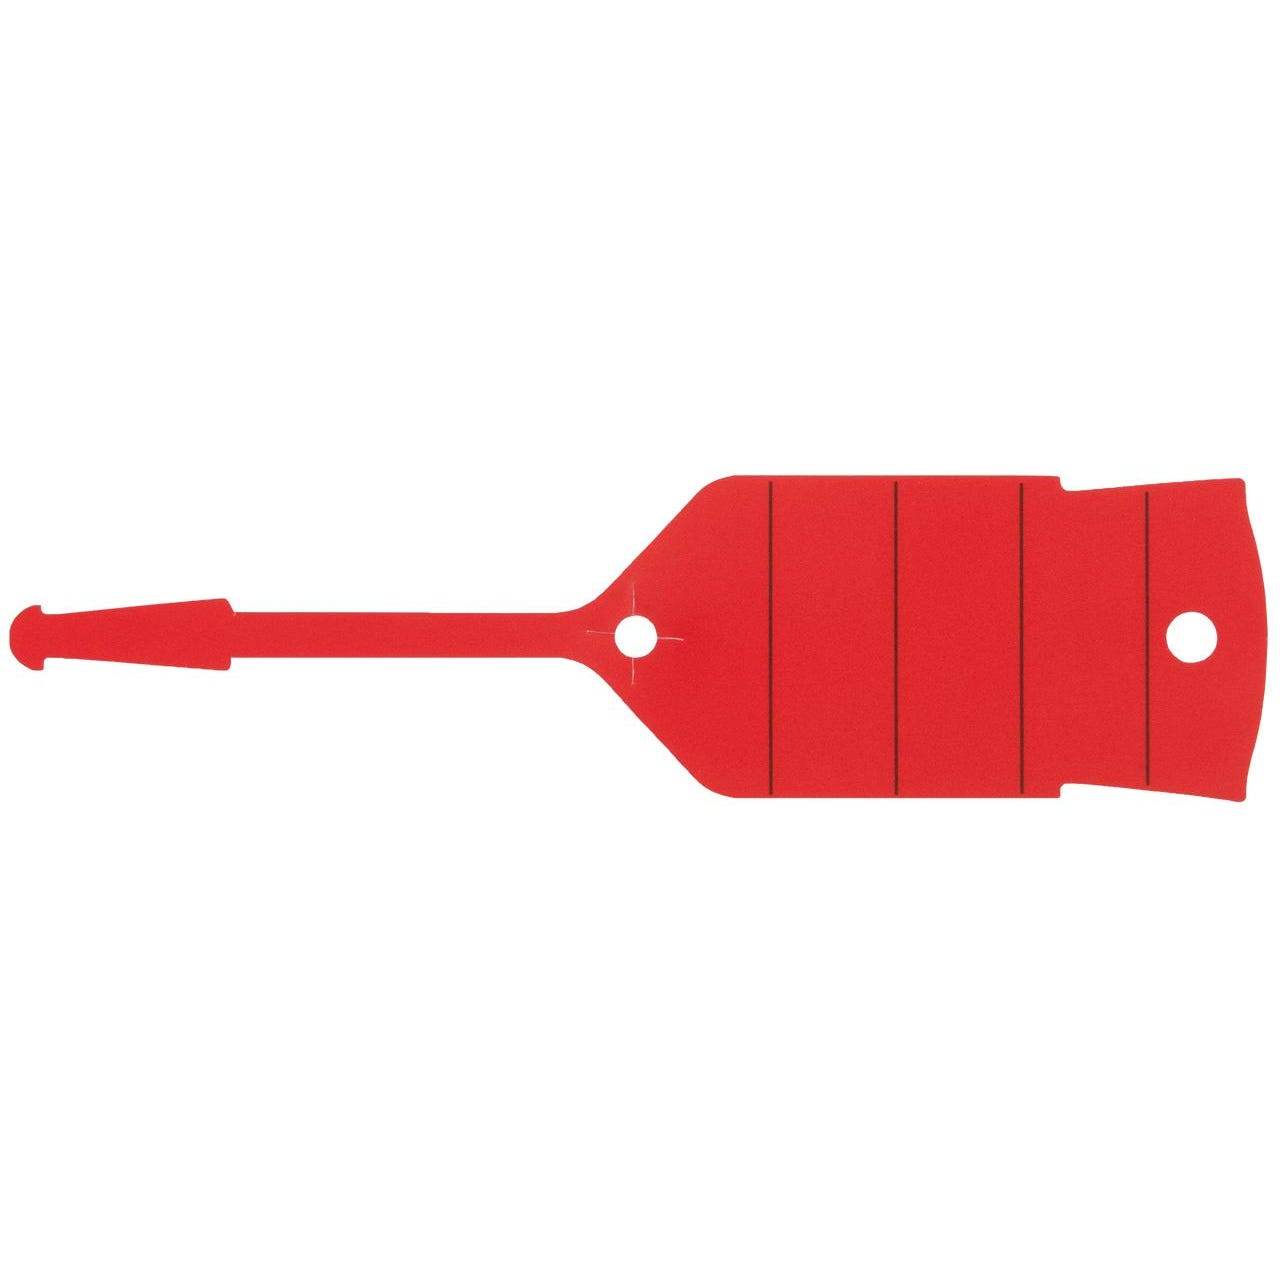 KS TOOLS Porte-clés avec boucle, rouge, pack de 500 0